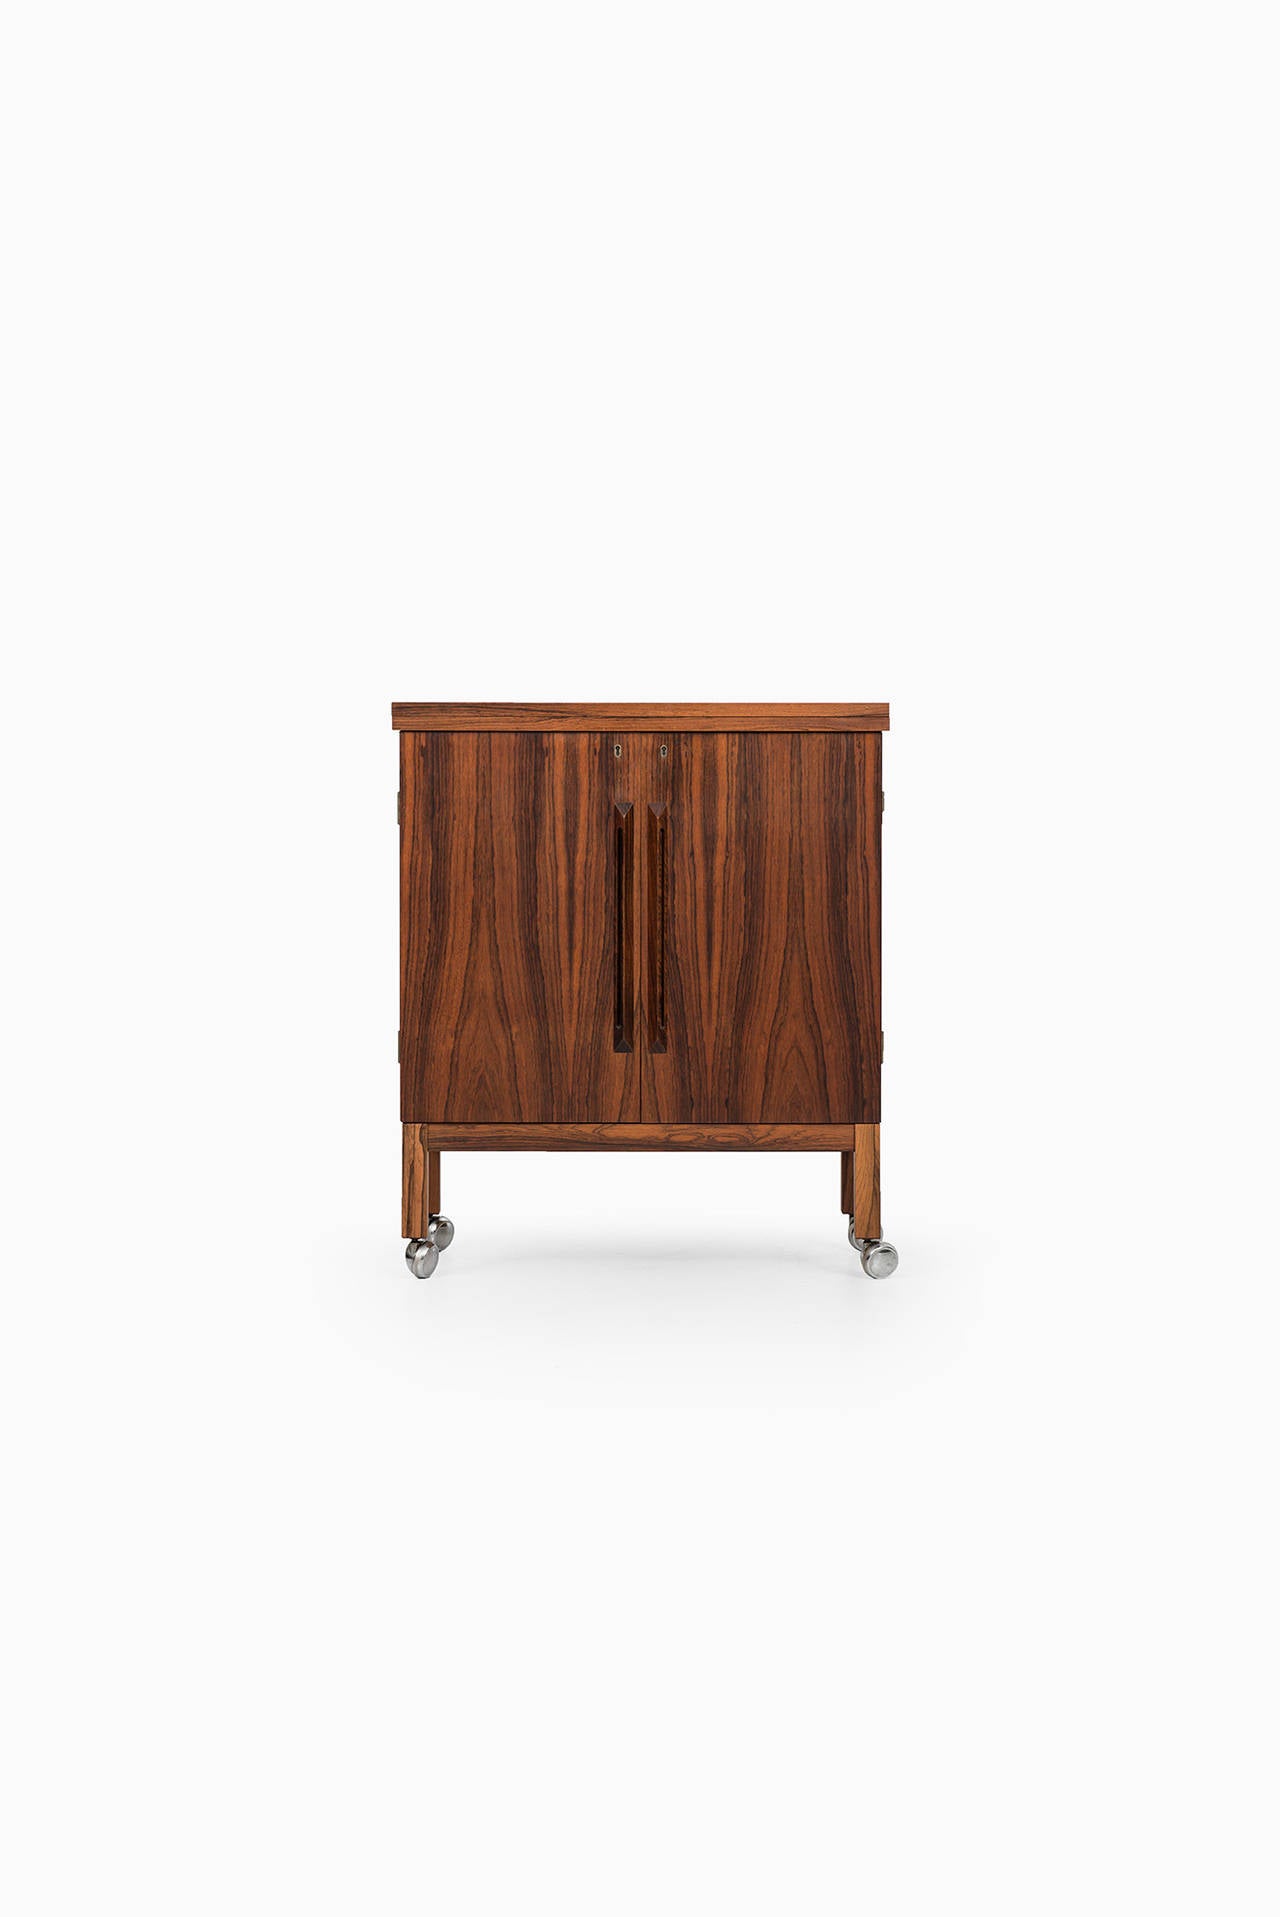 Rare bar cabinet designed by Torbjørn Afdal. Produced by Mellemstrands møbelfabrik in Norway.